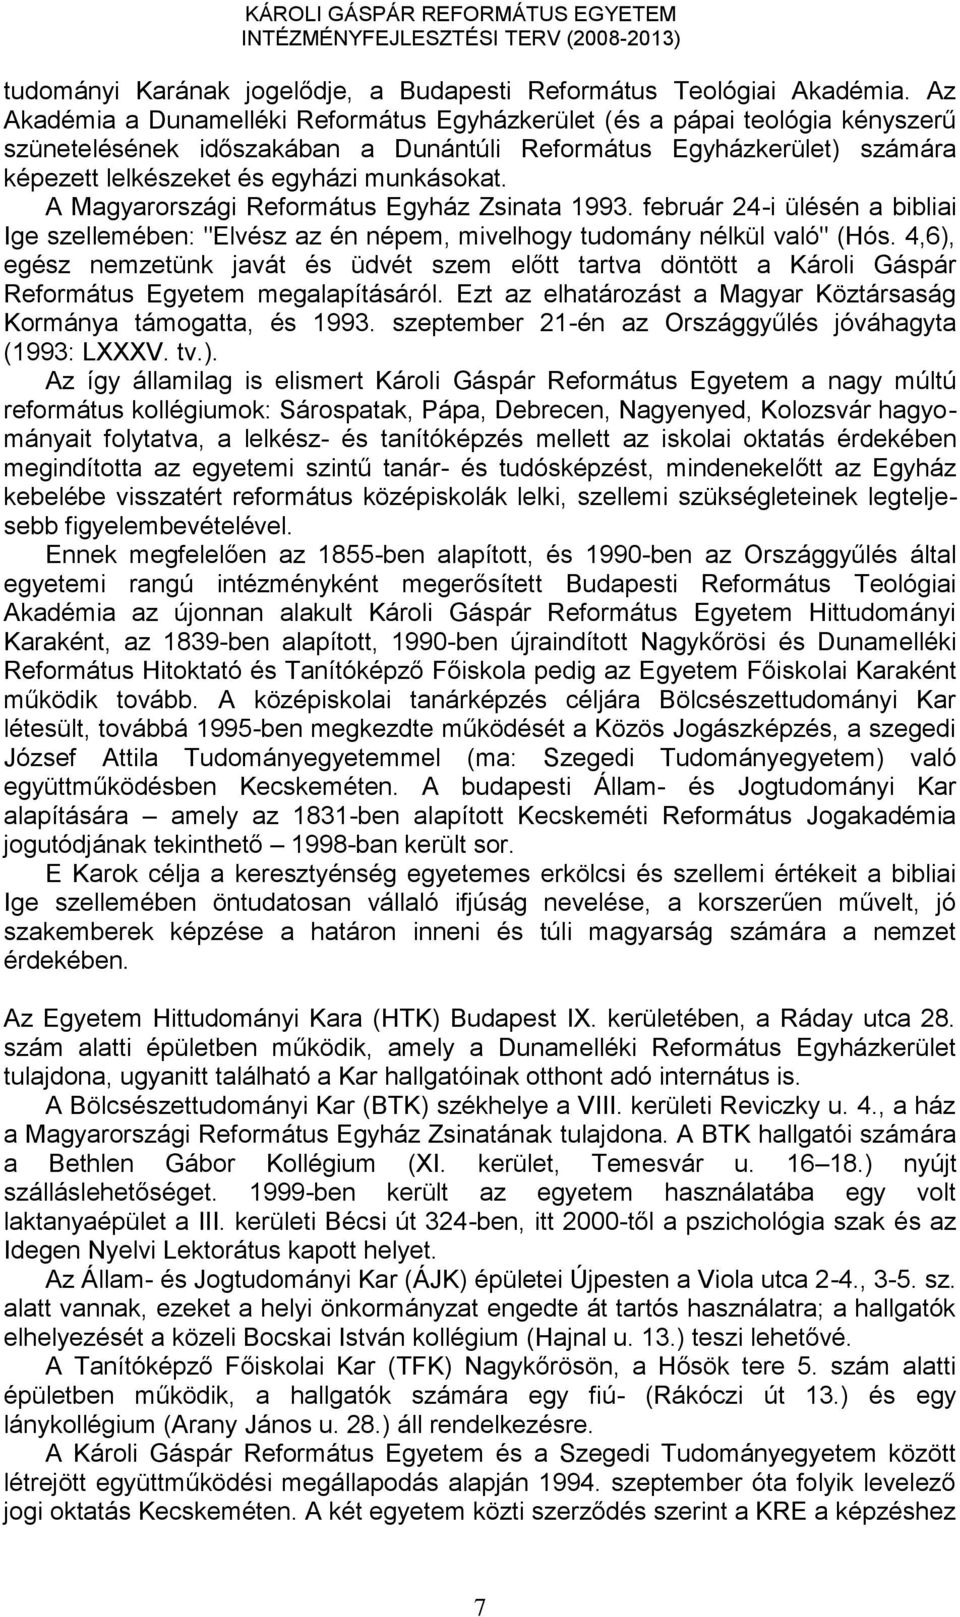 A Magyarországi Református Egyház Zsinata 1993. február 24-i ülésén a bibliai Ige szellemében: "Elvész az én népem, mivelhogy tudomány nélkül való" (Hós.